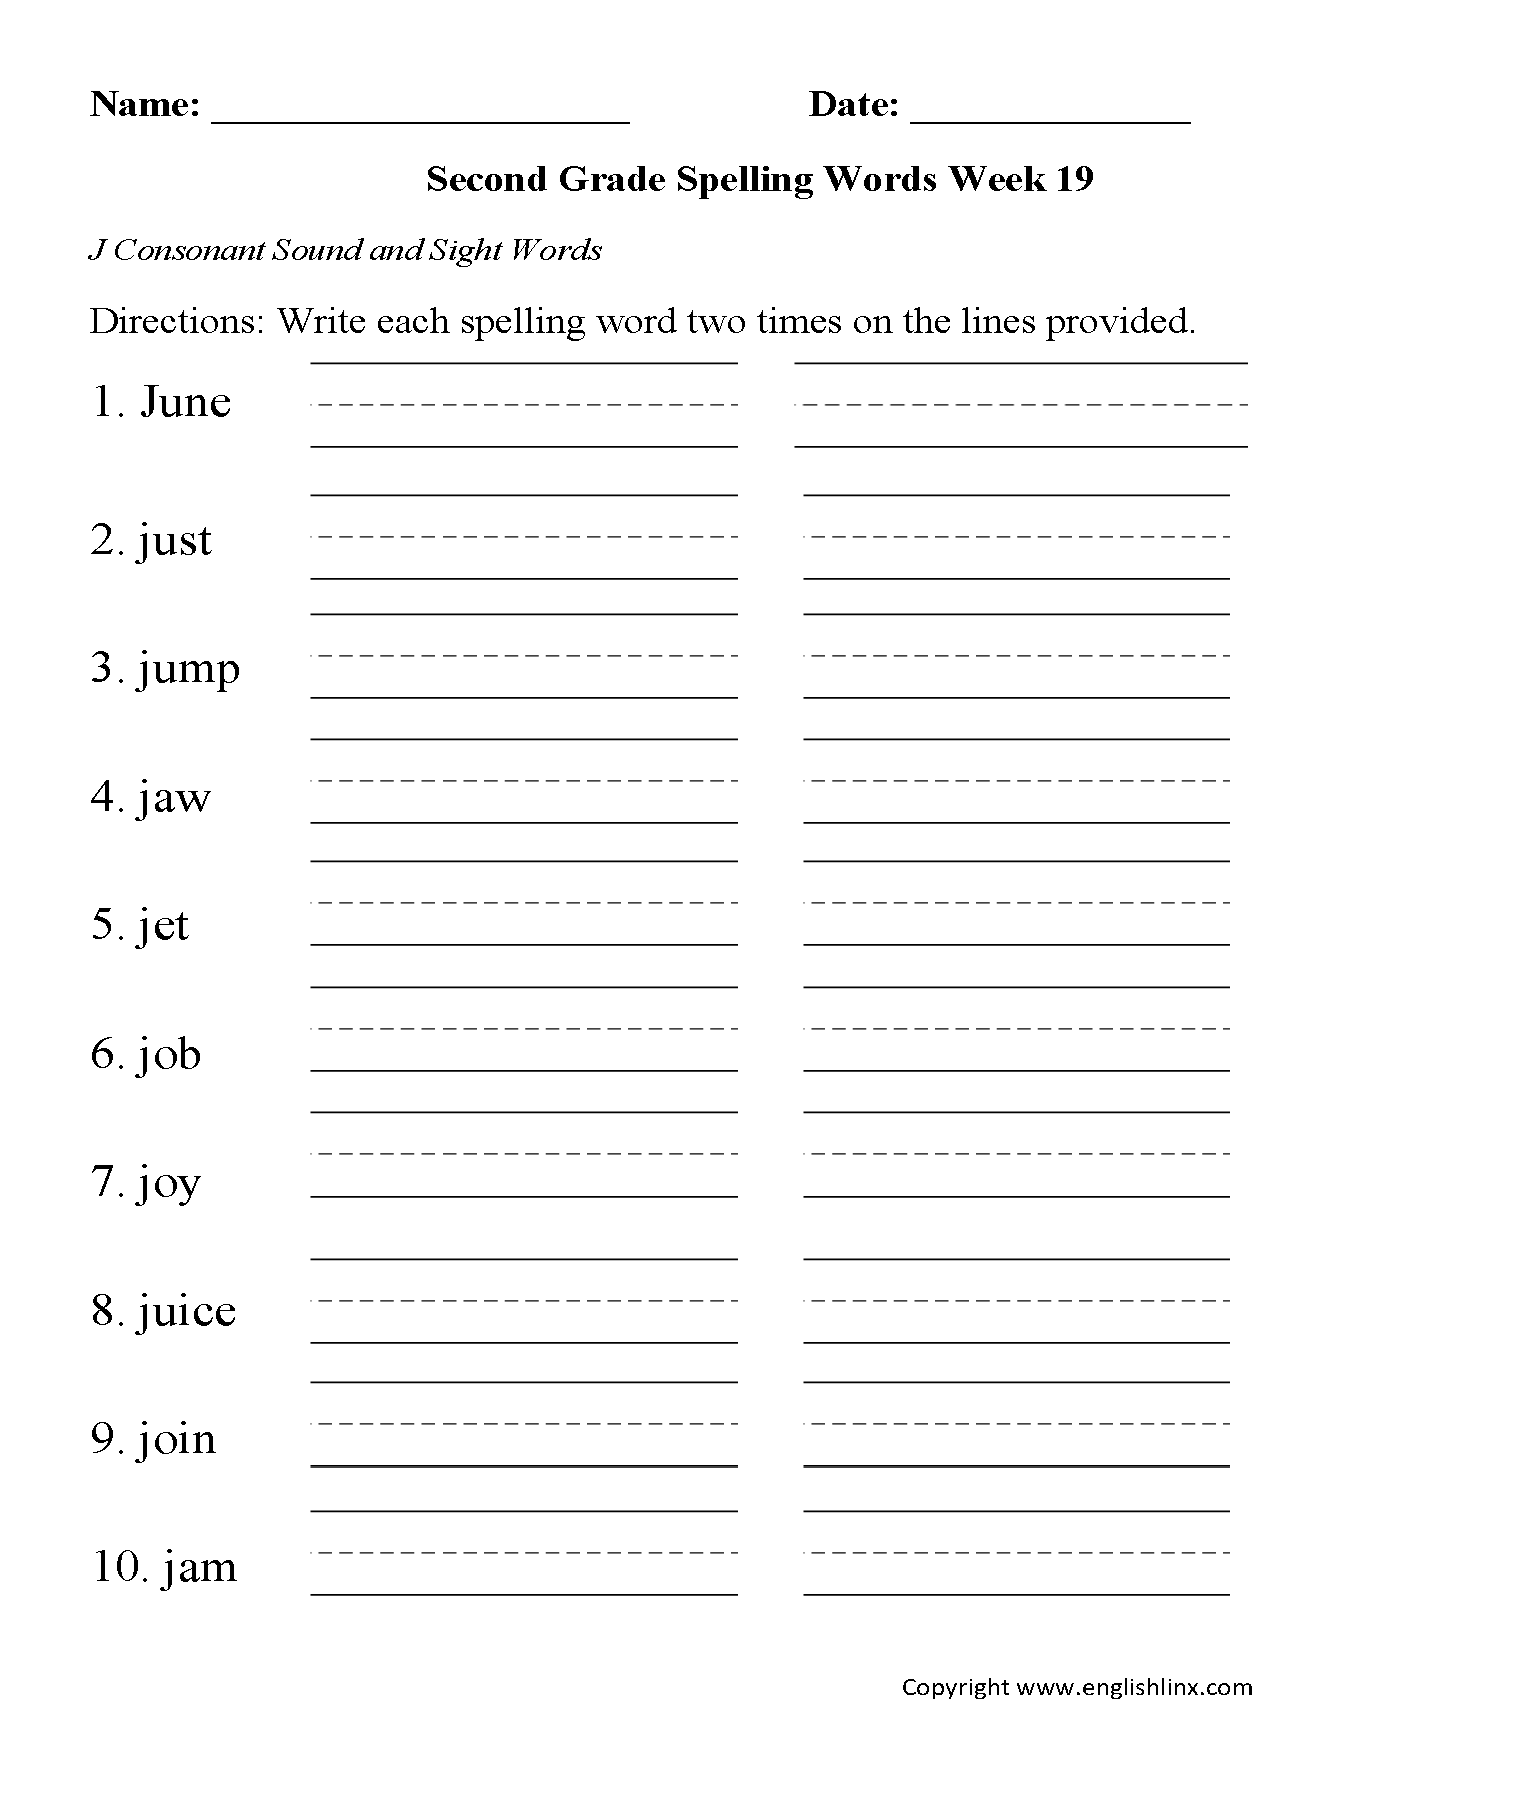 Week 19 J Consonant Second Grade Spelling Worksheets